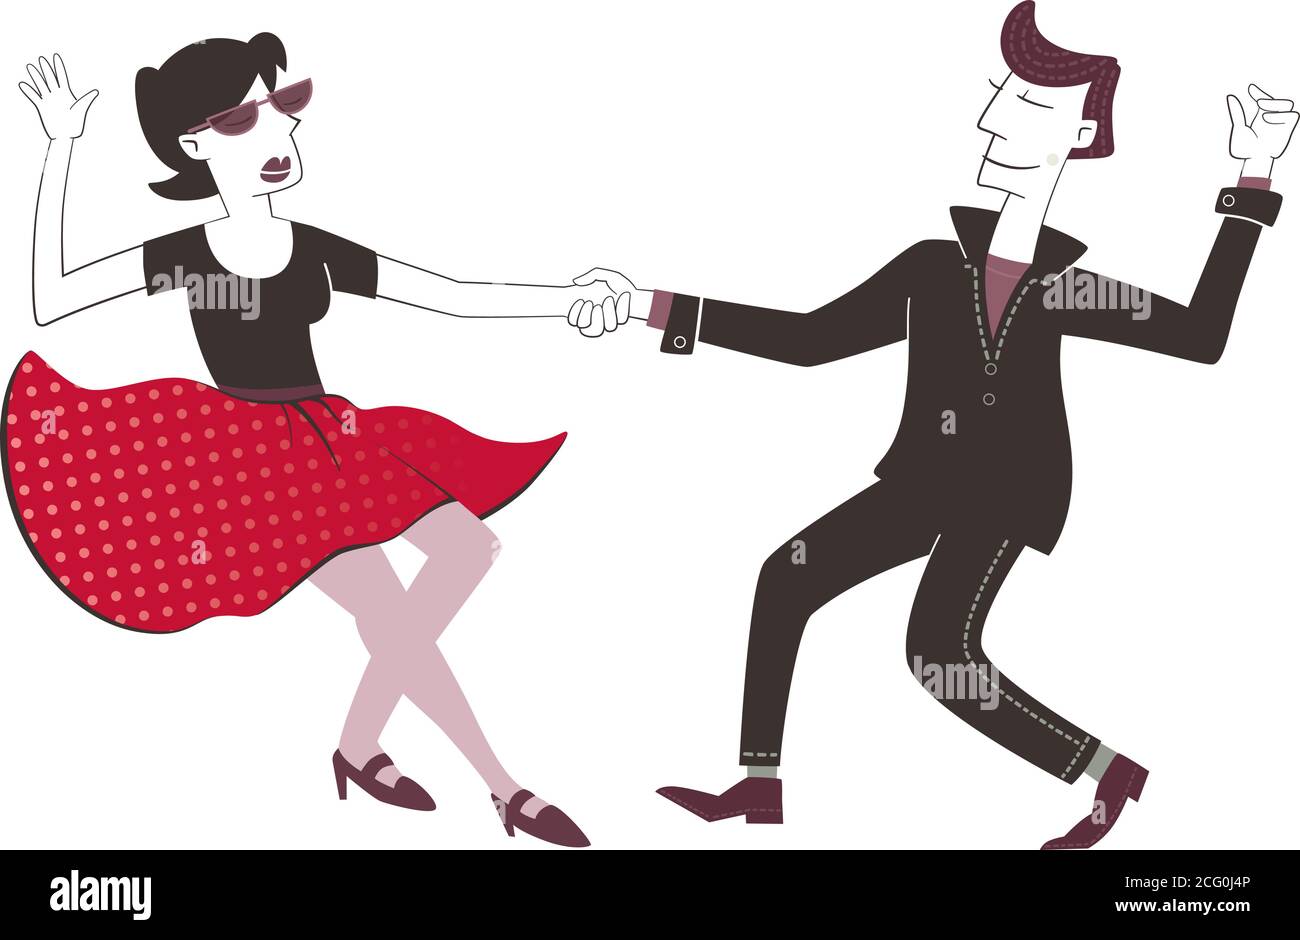 Illustration de style rétro d'un homme et d'une femme dansant du rock and roll. Isolé sur fond blanc. Illustration de Vecteur